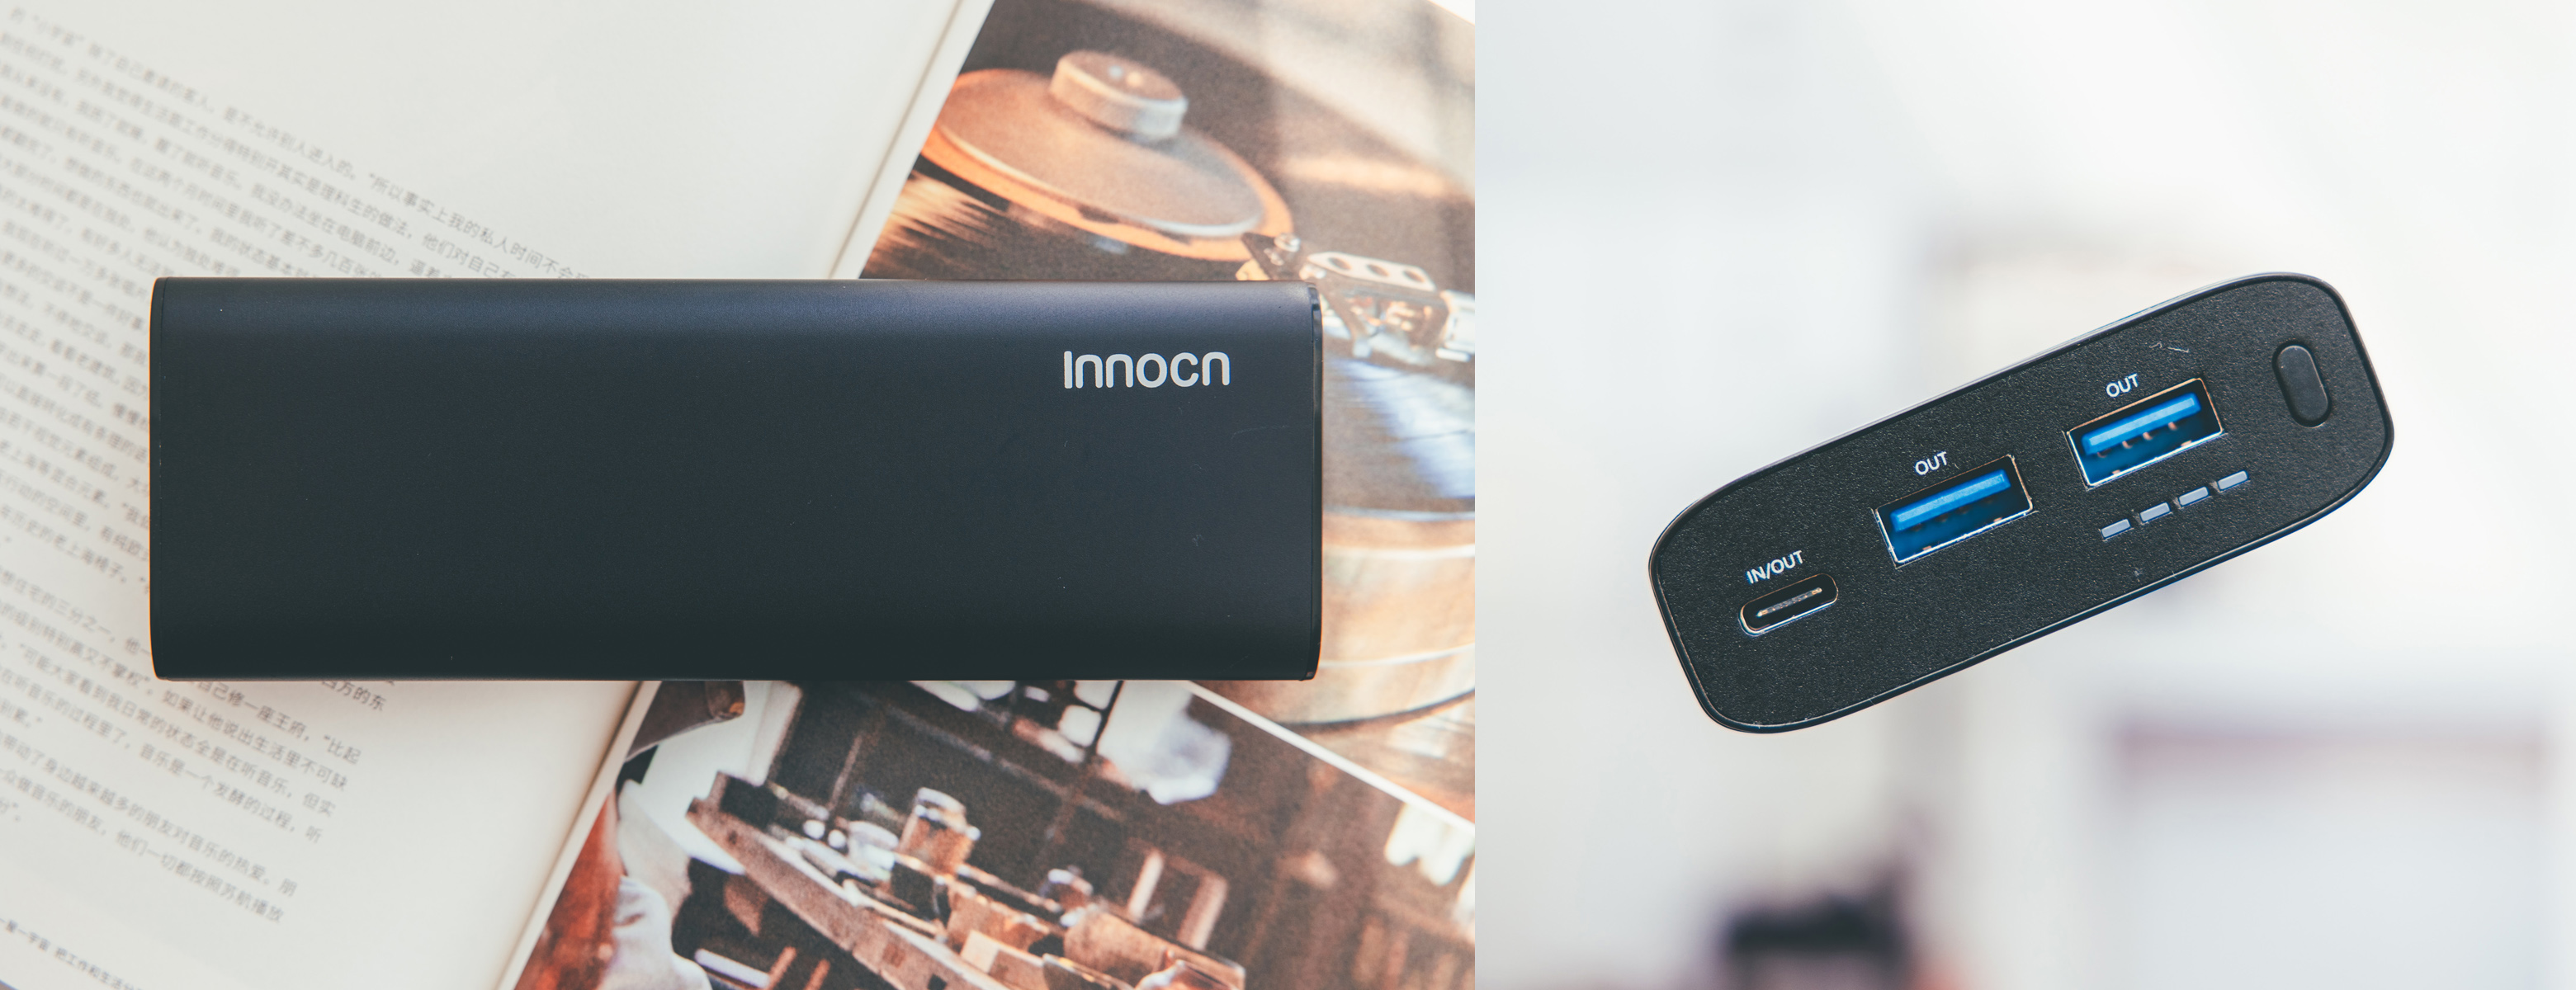 糖纸众测丨 15.6 英寸 4K 分辨率，折叠、广色域，INNOCN N1U Pro 便携屏幕全场景体验